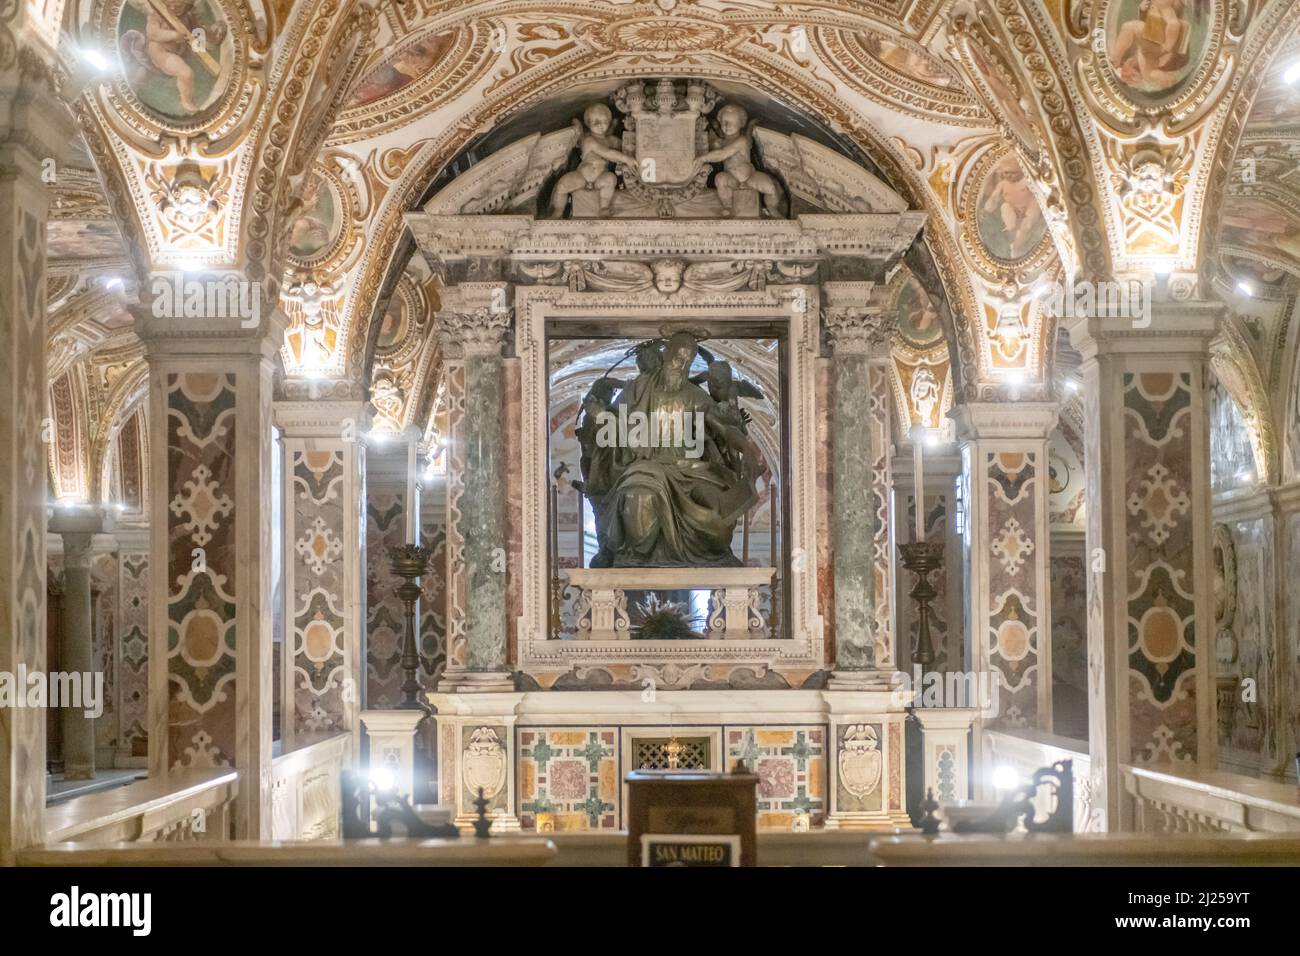 La Cripta barocca che conserva i resti di San Matteo dal 1080 Foto Stock